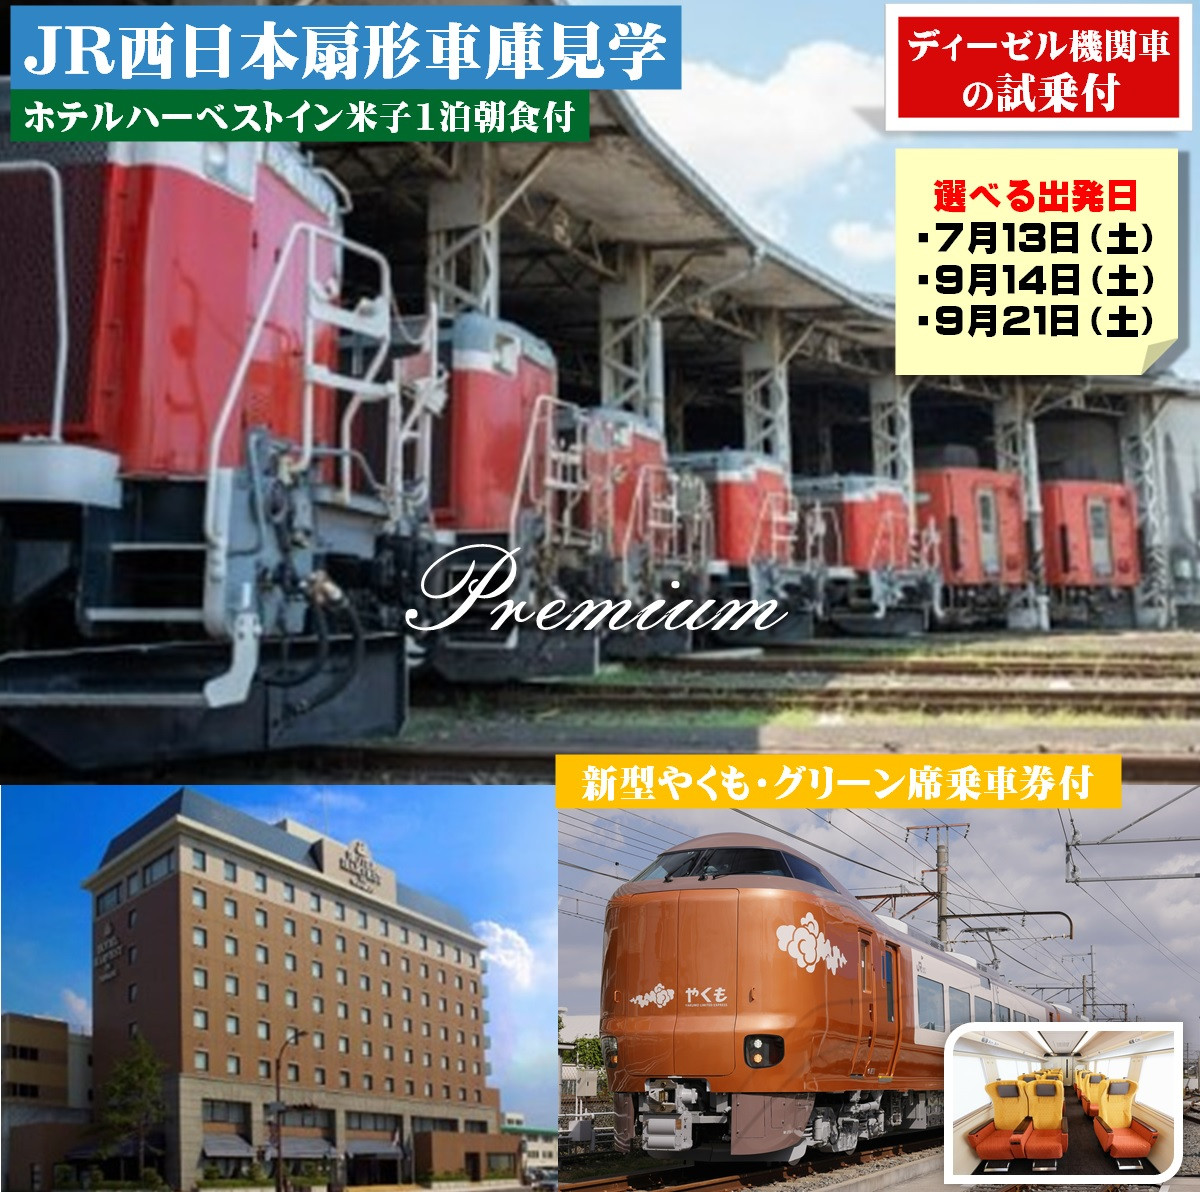 
【プレミアム】JR西日本扇形車庫見学ツアー(7月13日、9月14日、9月21日出発分)
